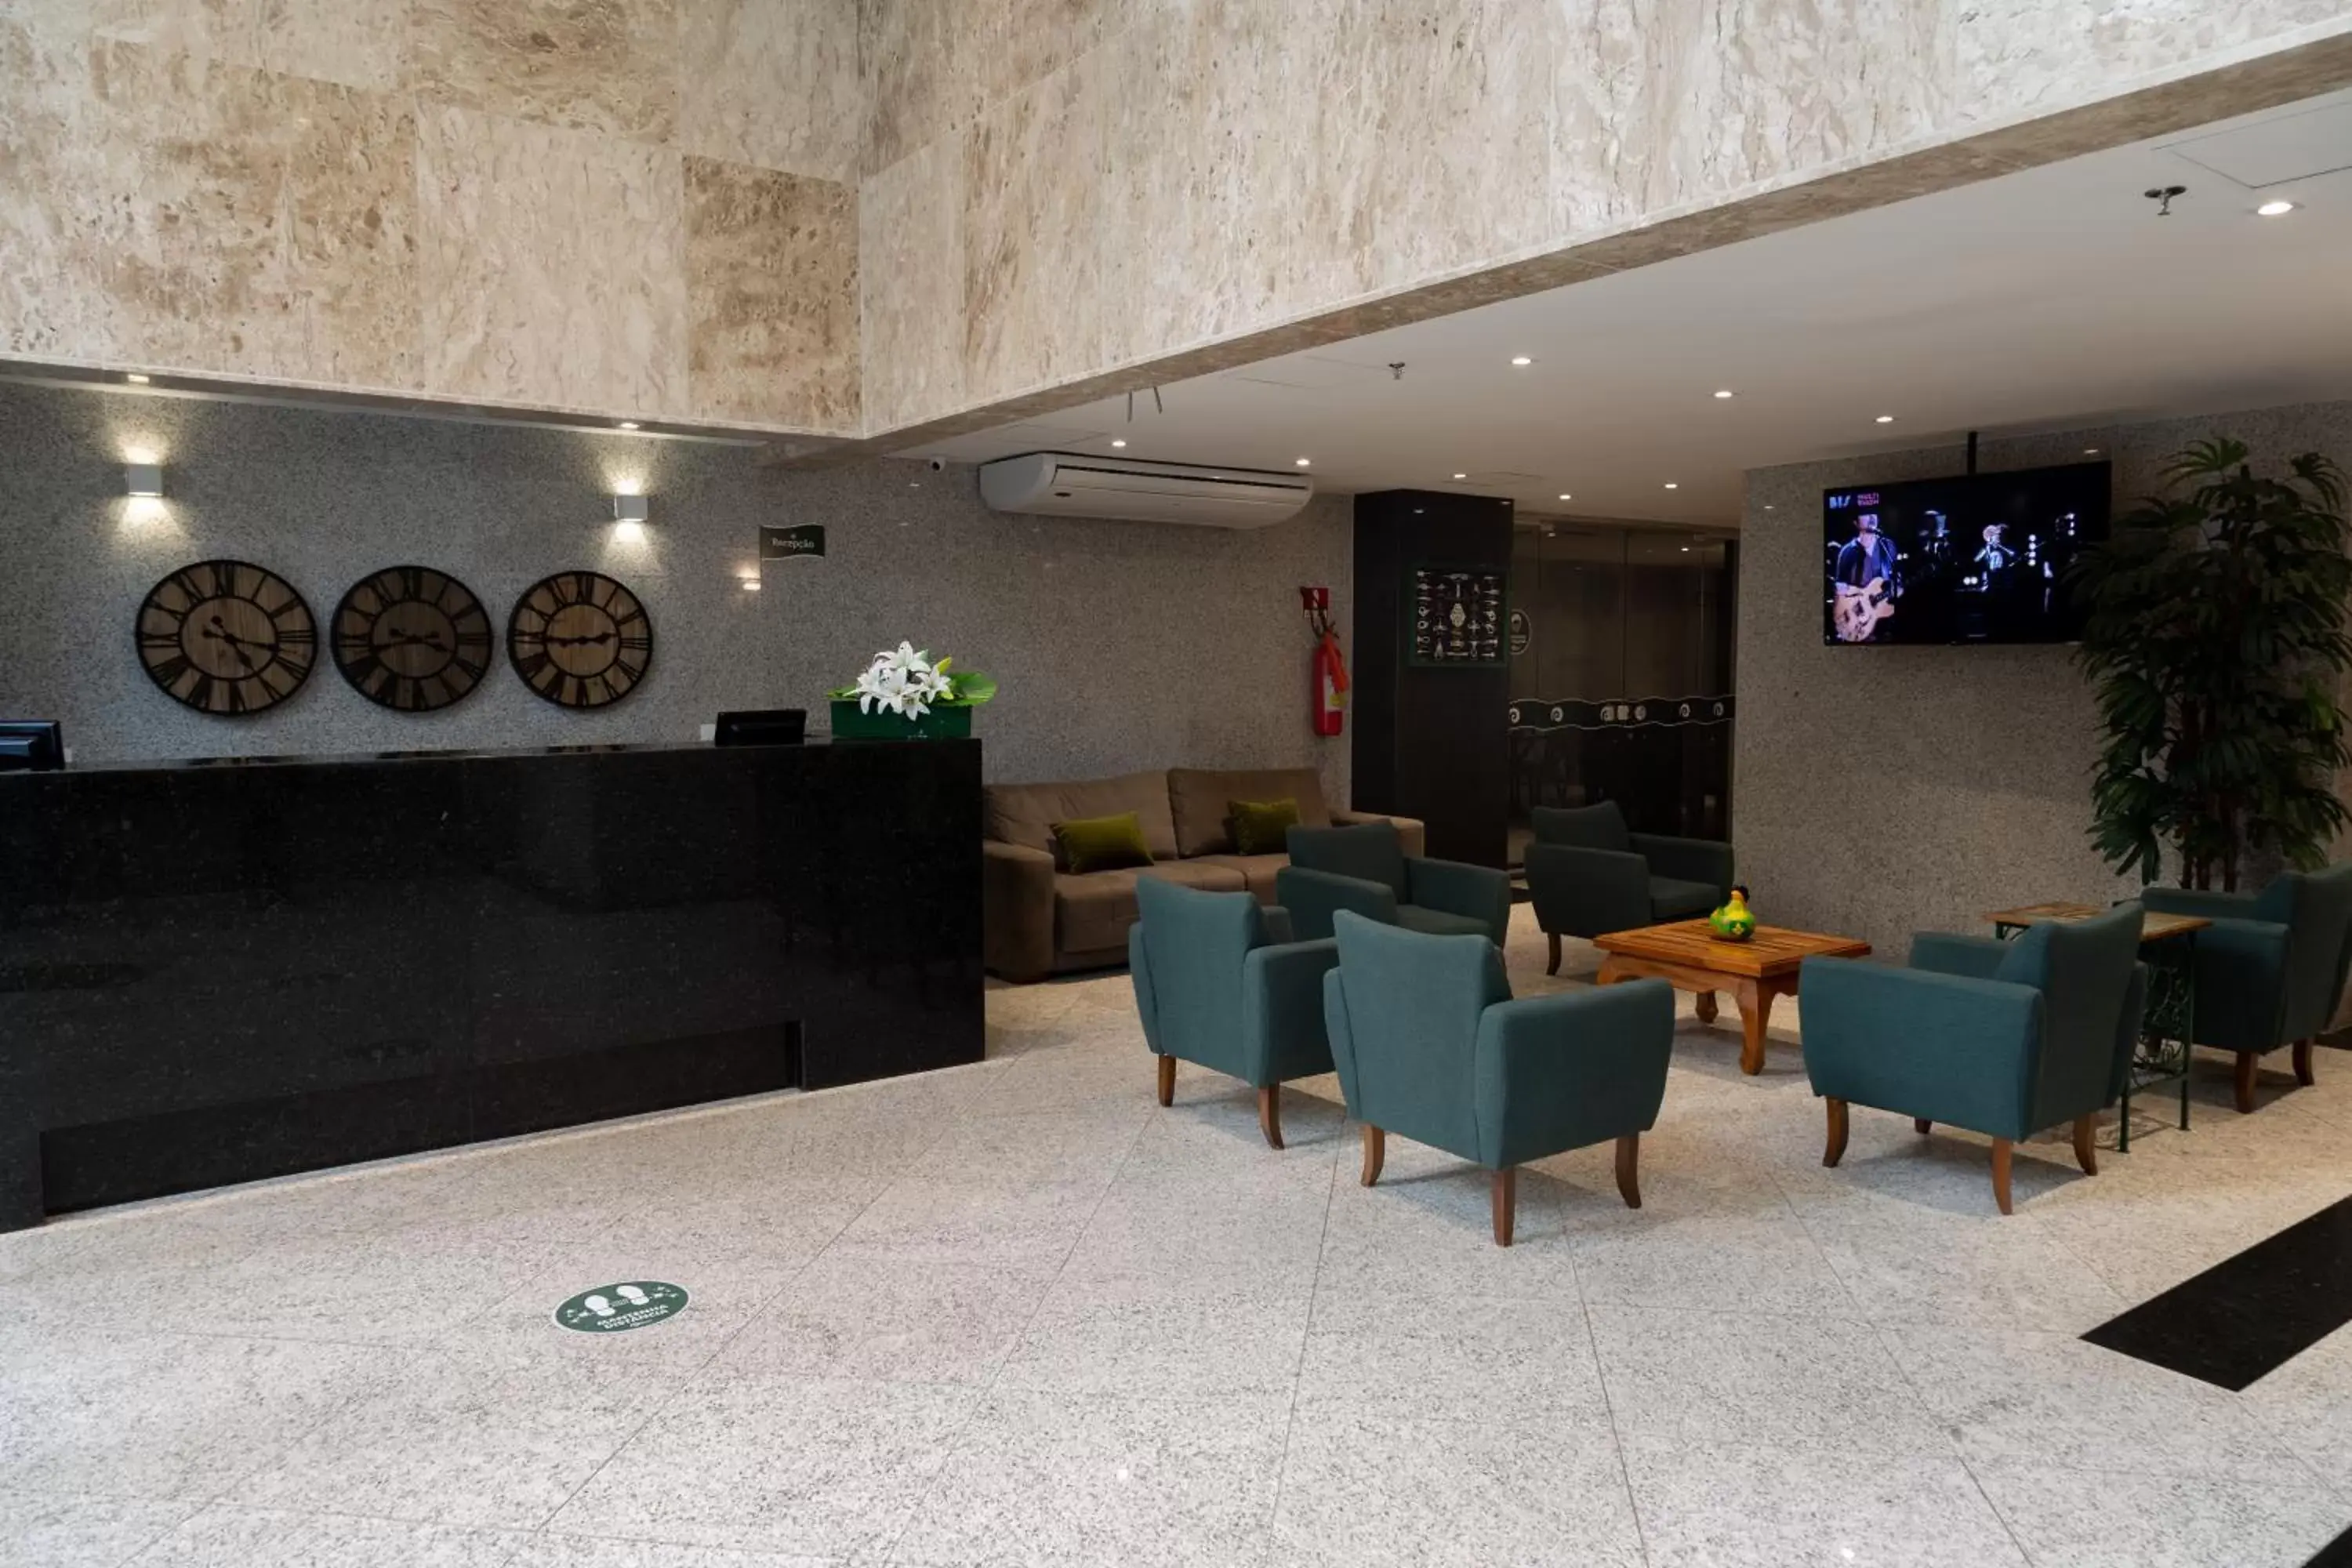 Lobby or reception in Aquidabã Praia Hotel